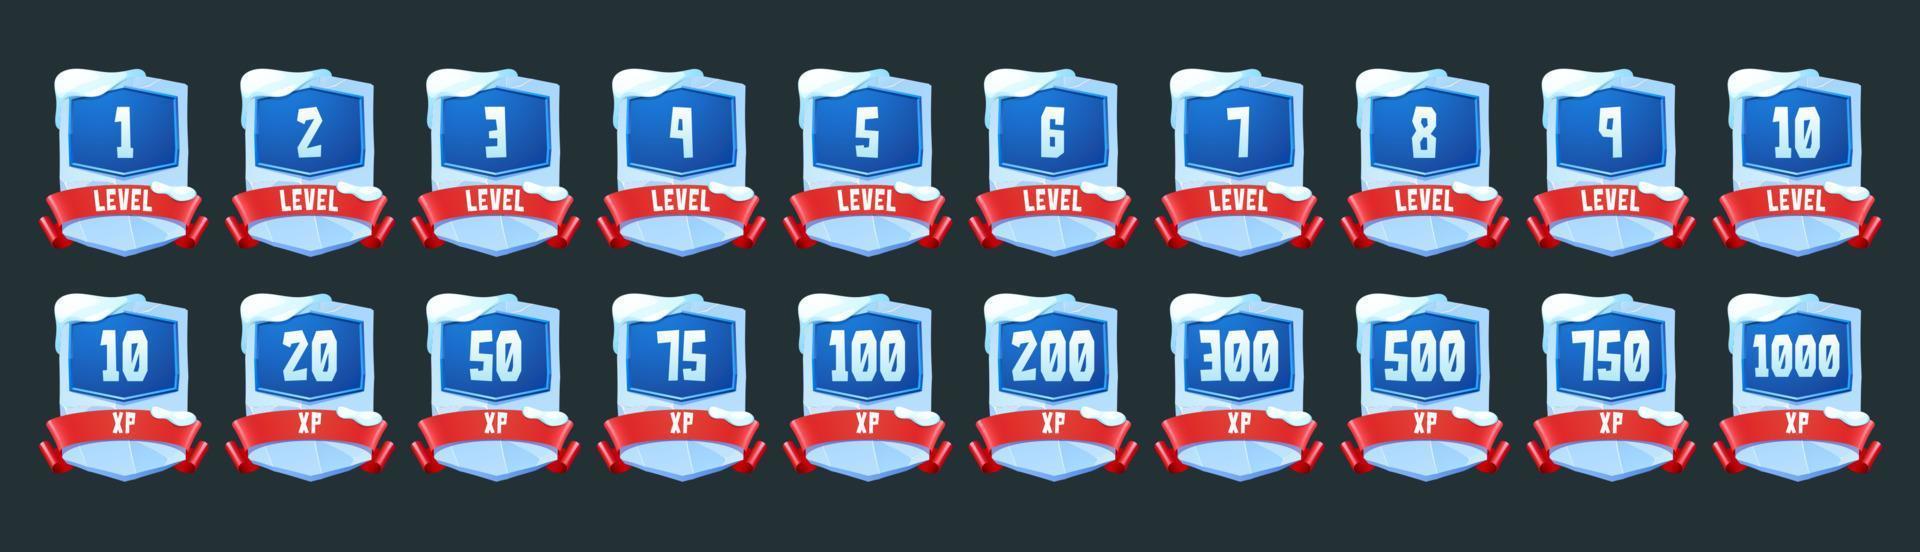 ghiaccio badge con livello numero e xp per gioco vettore